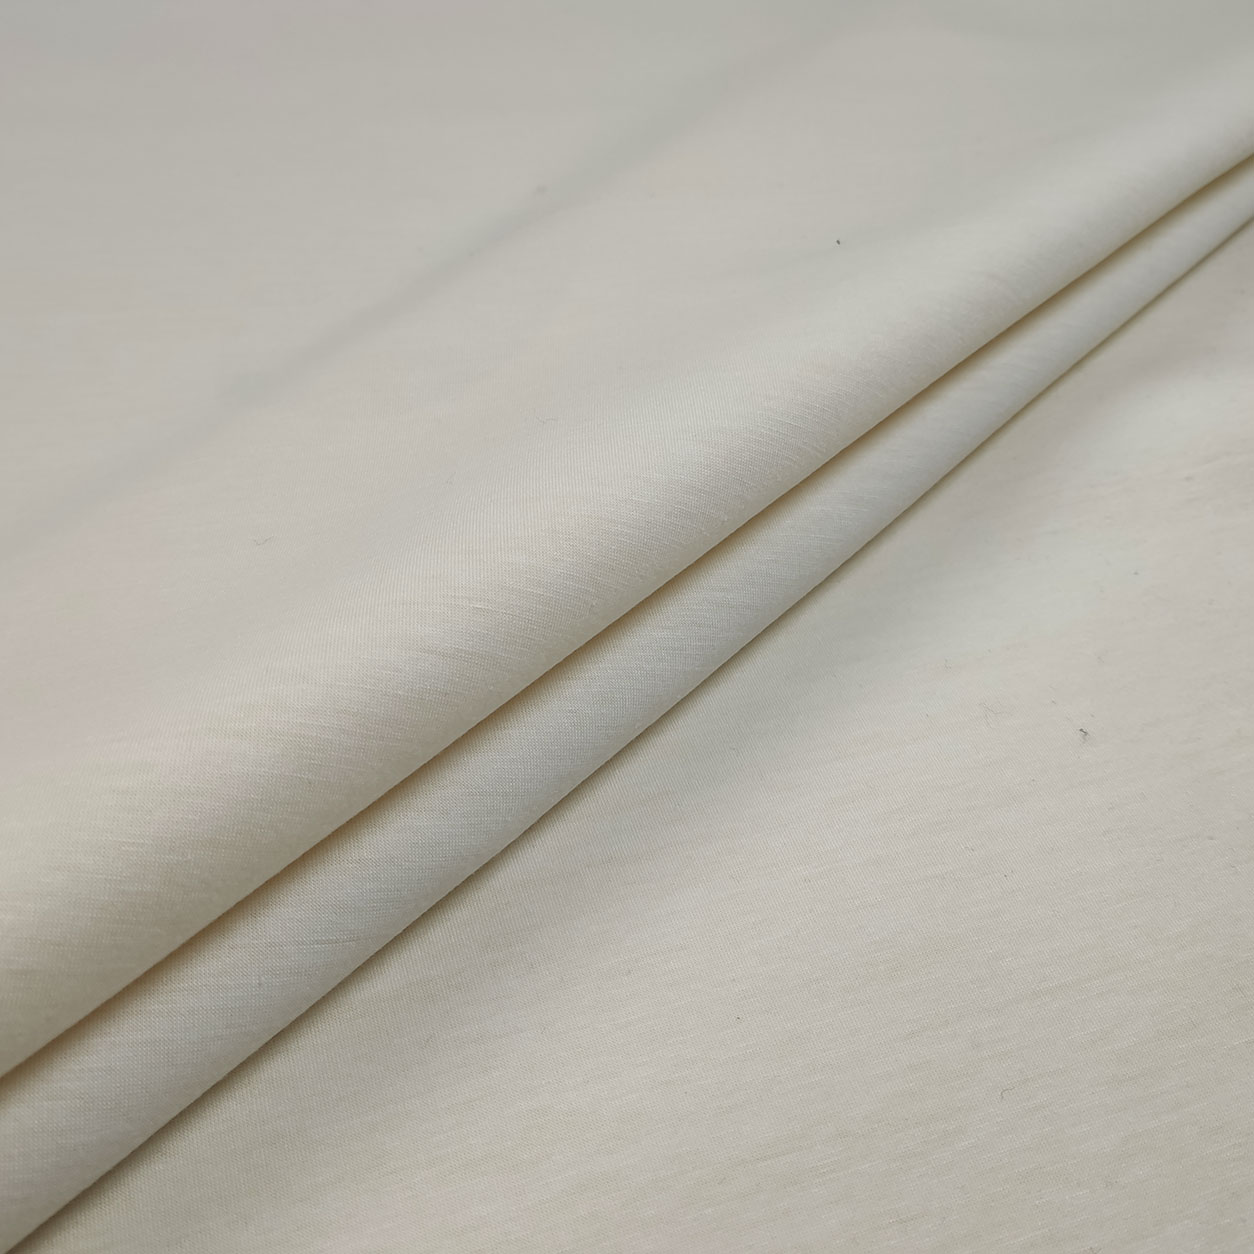 100% cotone venduto per scampolo peso 140 g/m² 1 m x 1,60 m, Flower Drawing nero e bianco di ottima qualità stampato vegetale Scampolo in tessuto cretonne certificato Oeko Tex 